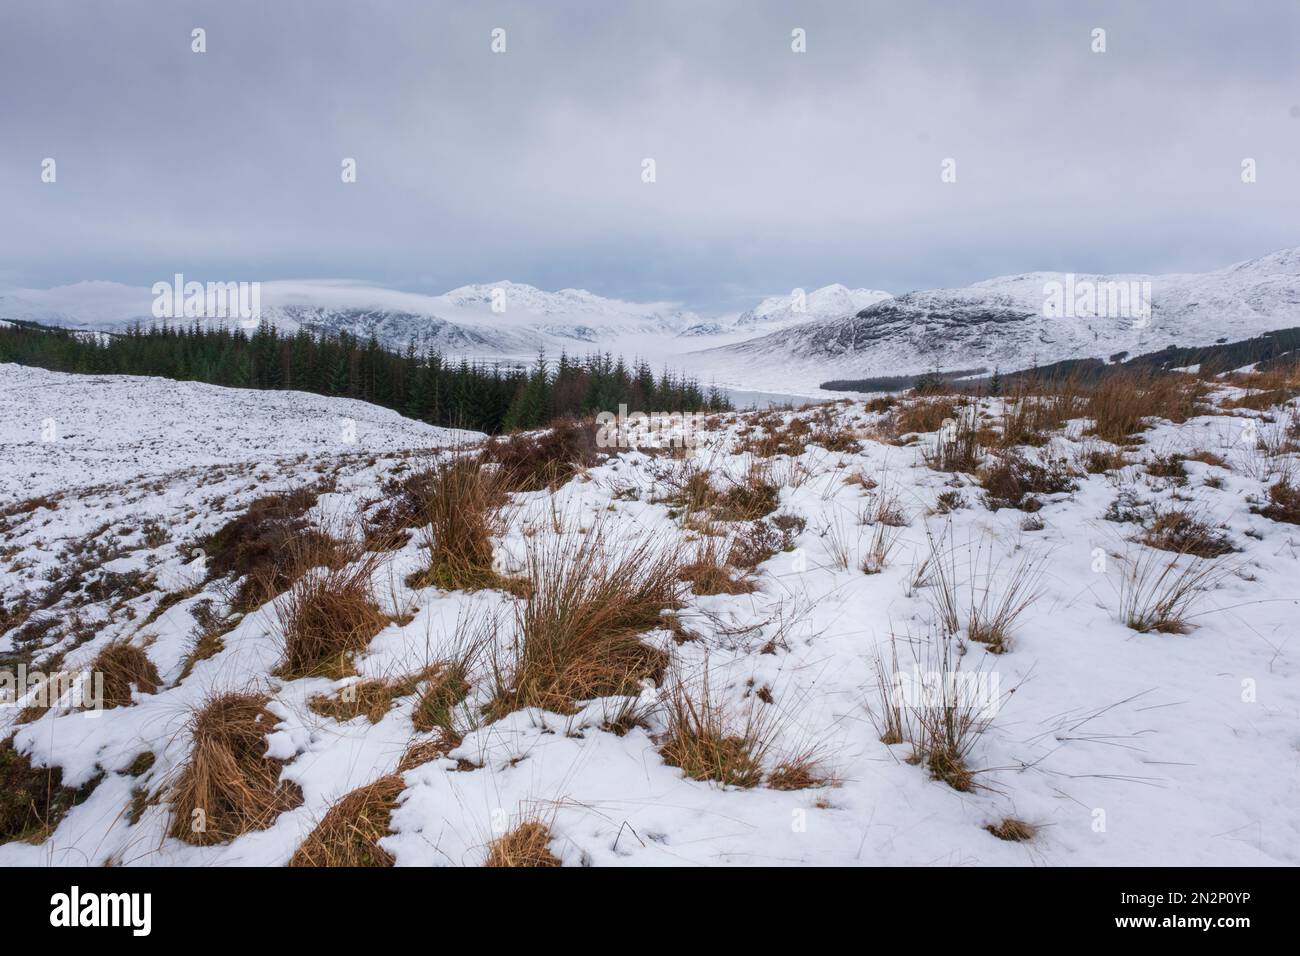 Royaume-Uni, Écosse. Paysage d'hiver dans les Highlands écossais, montagnes, collines et champs couverts de neige. Prairies et conifères. Personne Banque D'Images